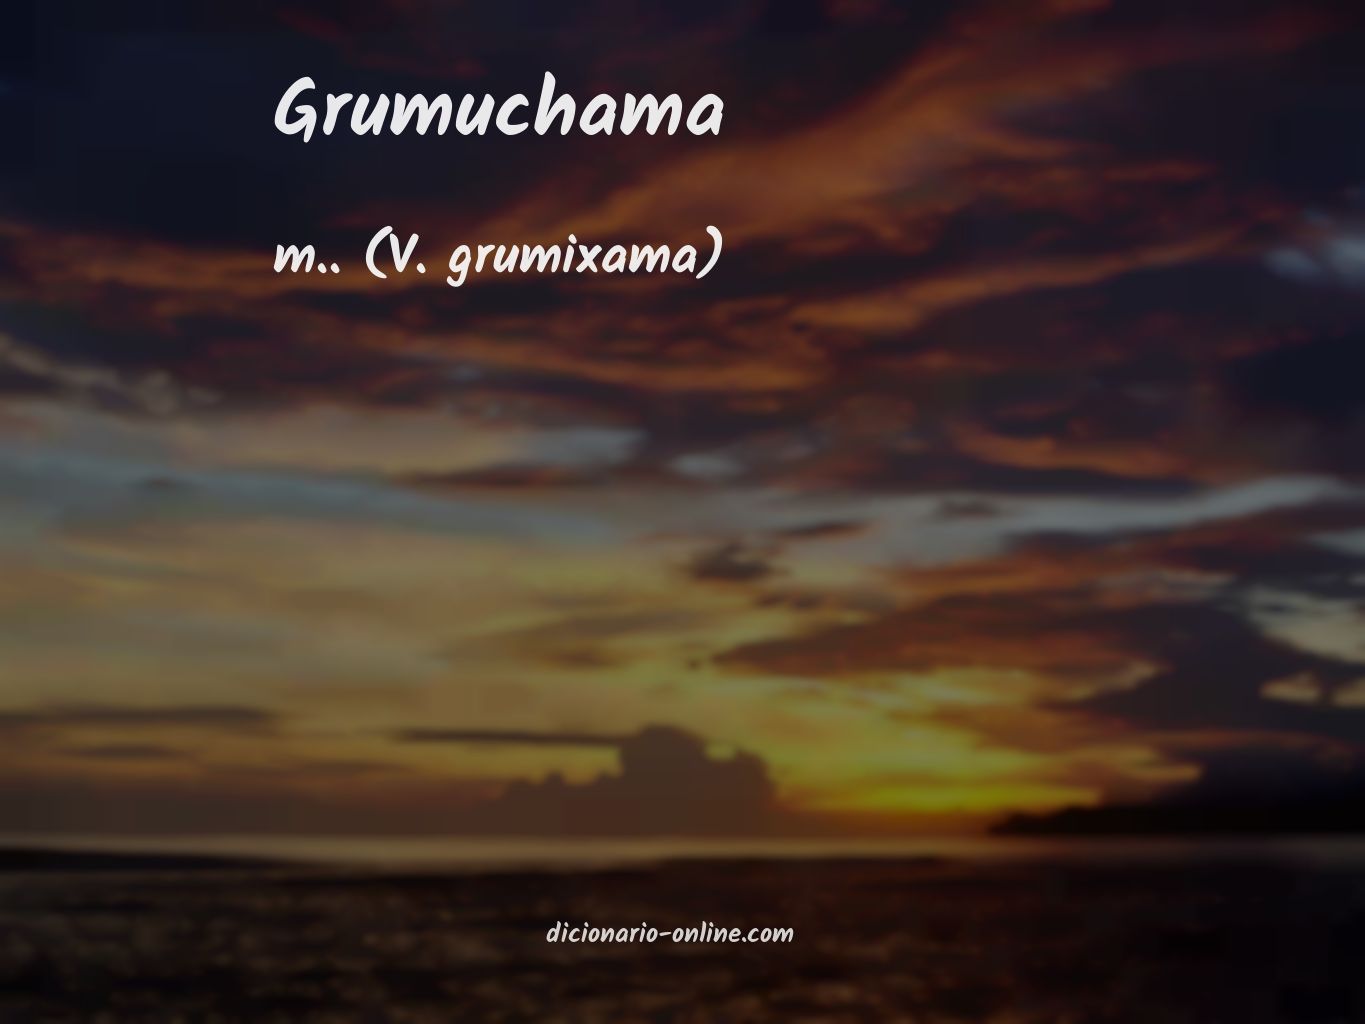 Significado de grumuchama